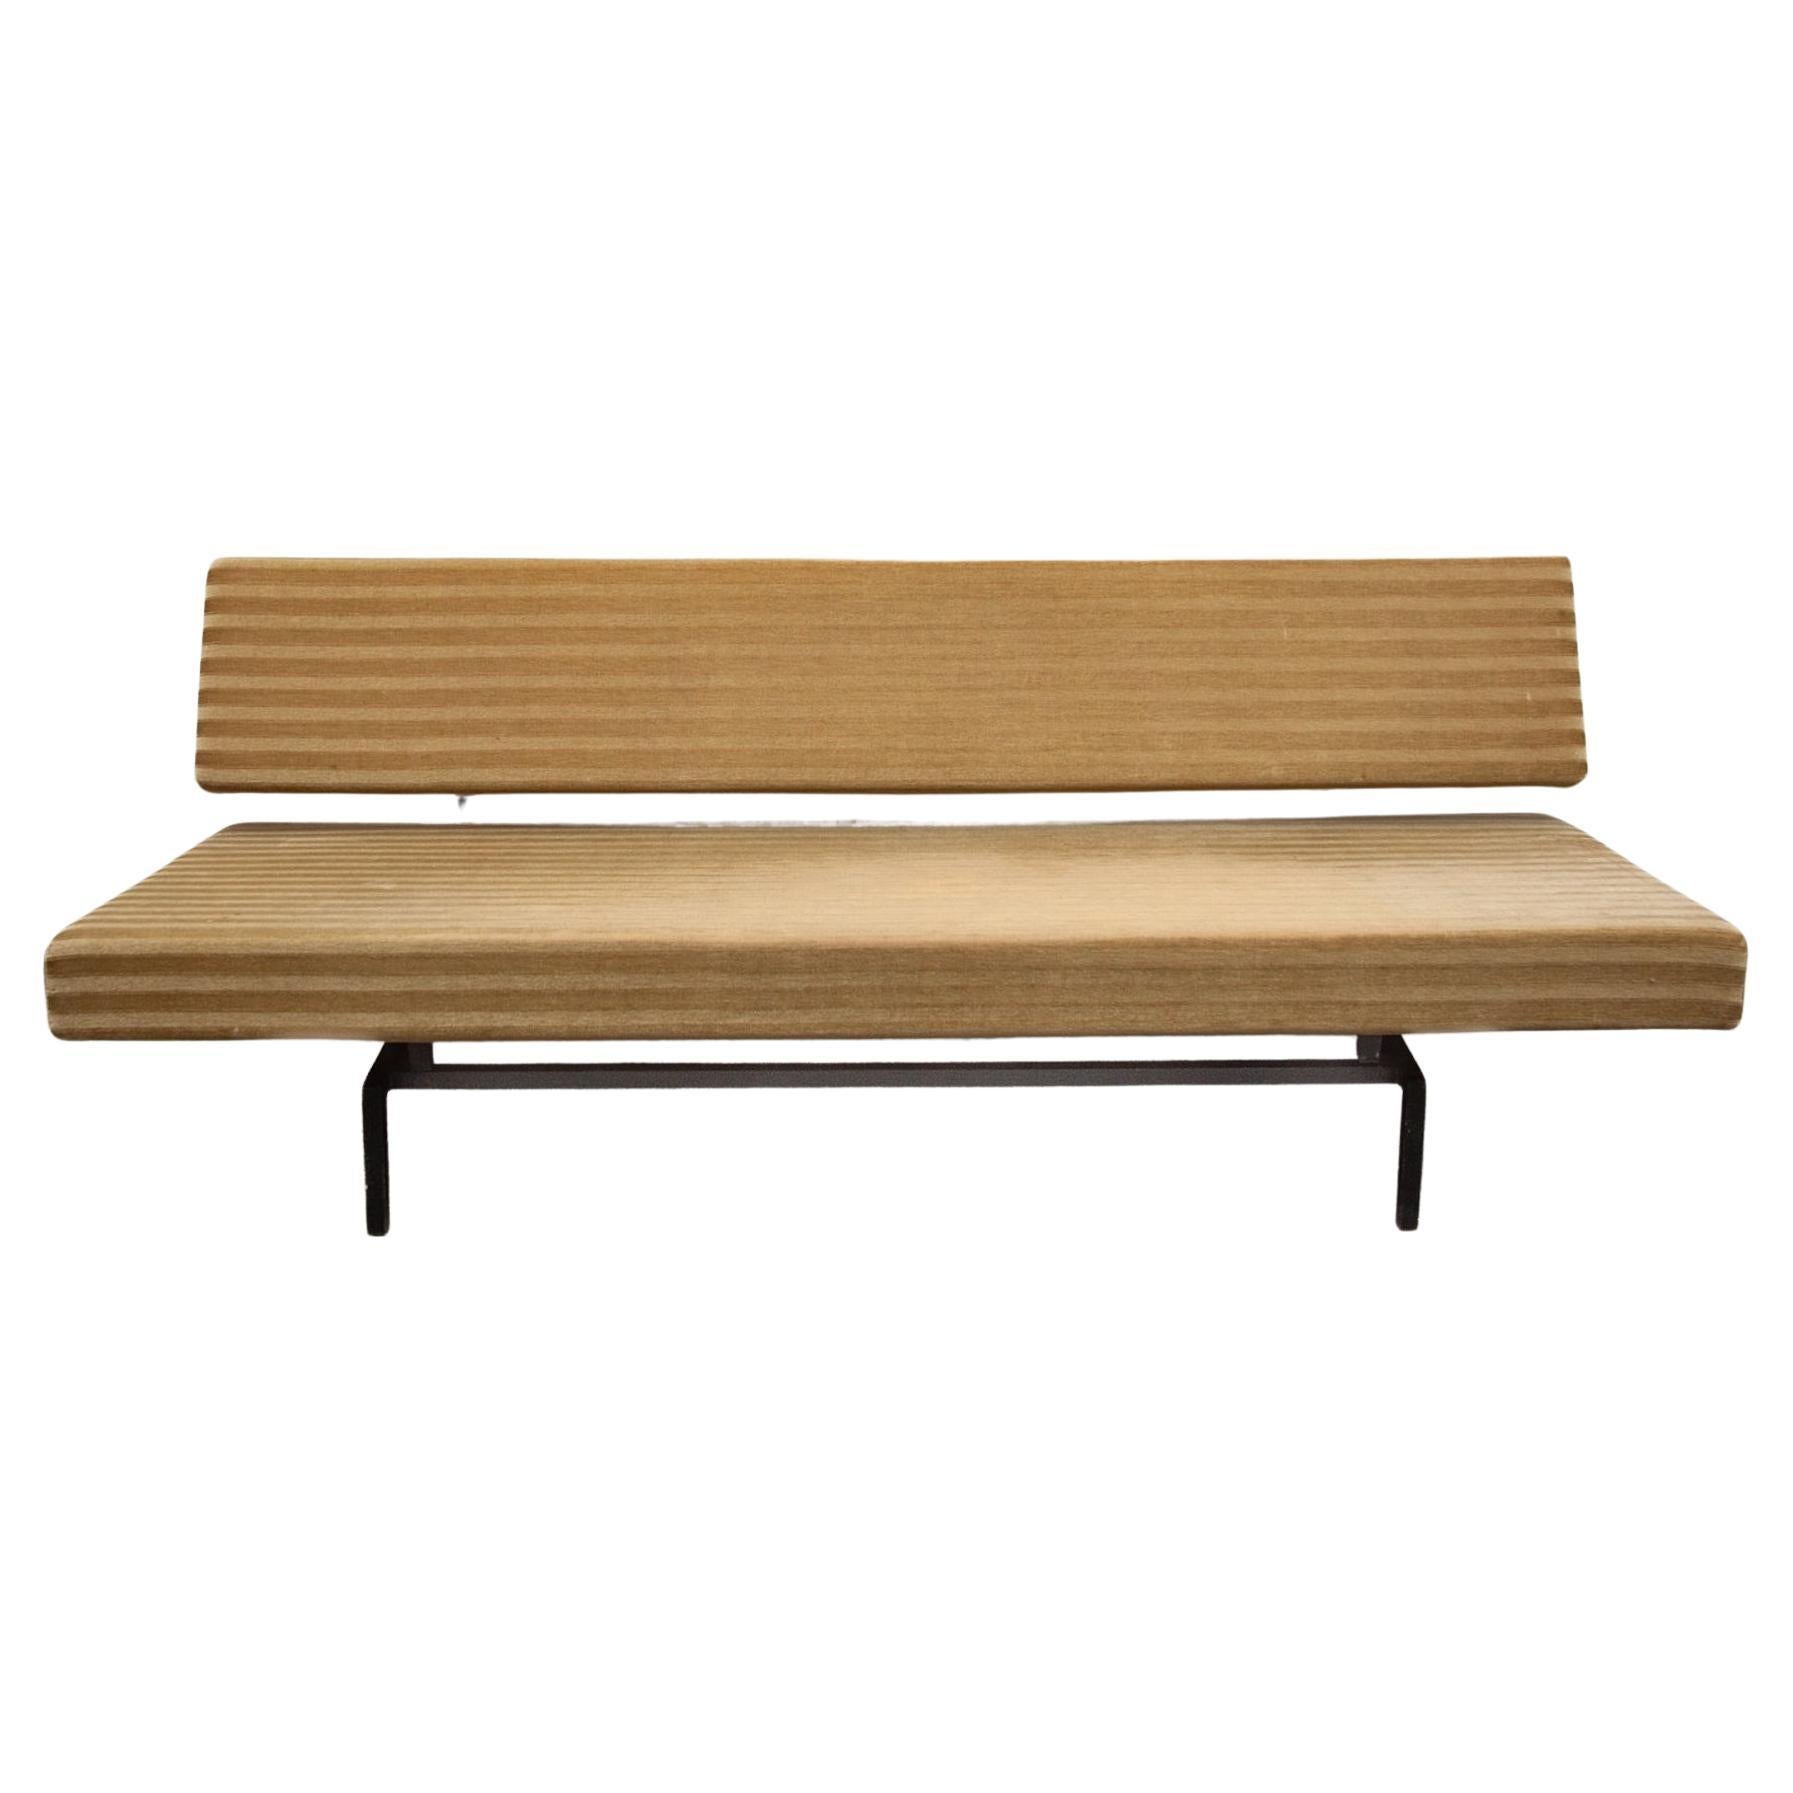 Original-Polsterung BS O2 Sofa, Daybed entworfen von Martin Visser, in den späten 1950er Jahren, Dutch Design made by Spectrum.  Das Gestell ist aus quadratischem, schwarz lackiertem Metall gefertigt. Eine einfache Bewegung verwandelt das Sofa in